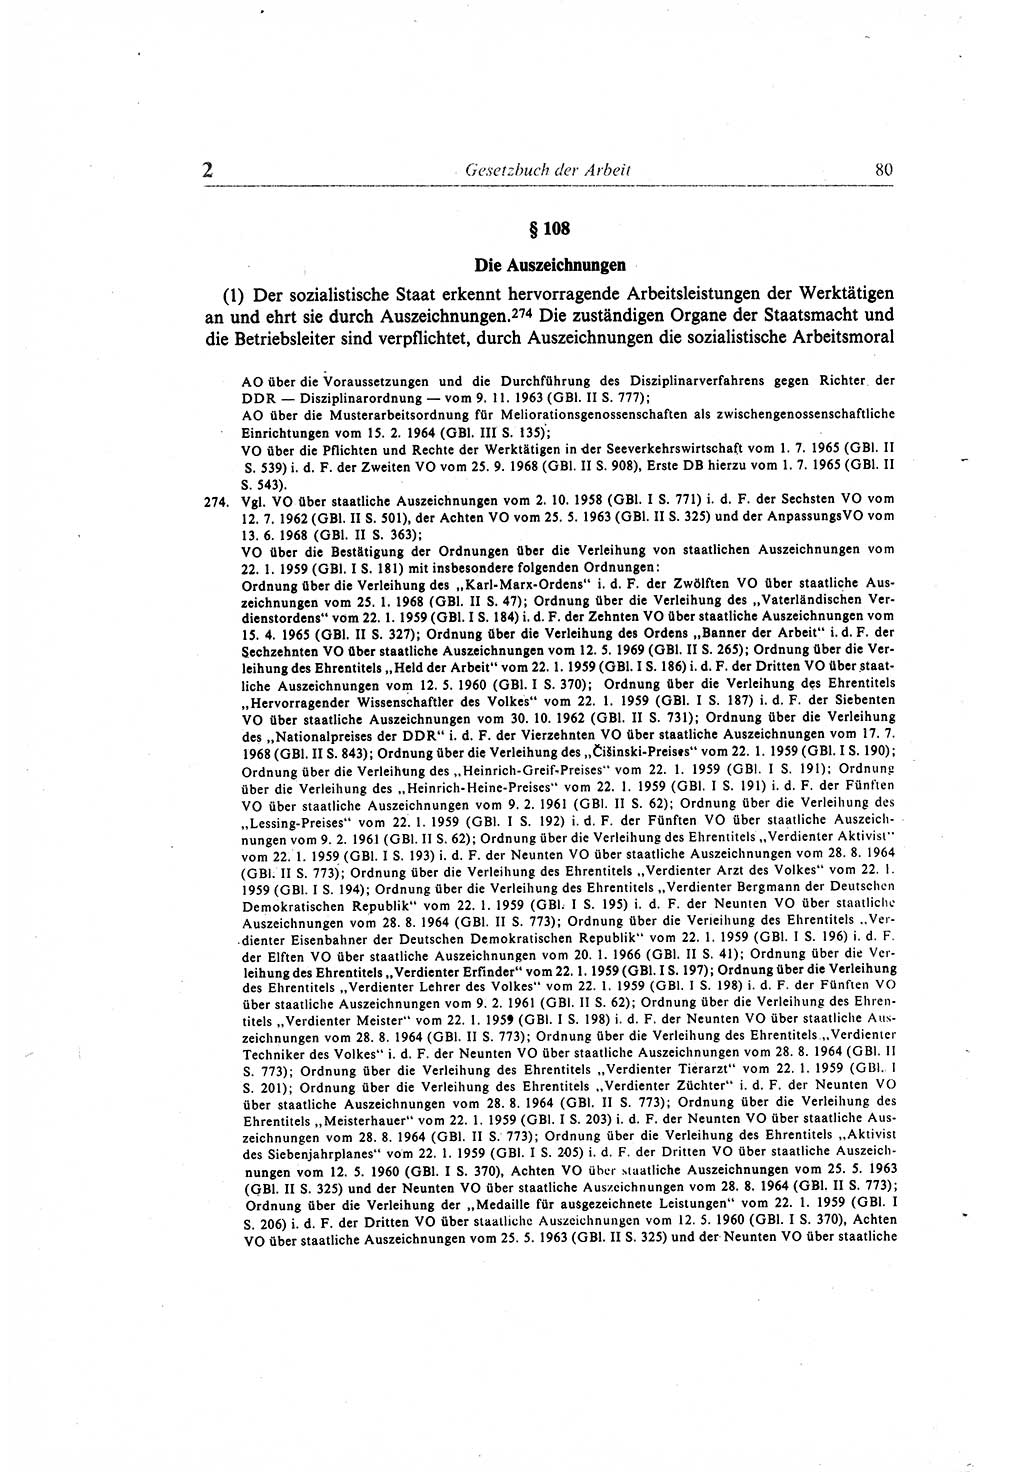 Gesetzbuch der Arbeit (GBA) und andere ausgewählte rechtliche Bestimmungen [Deutsche Demokratische Republik (DDR)] 1968, Seite 80 (GBA DDR 1968, S. 80)